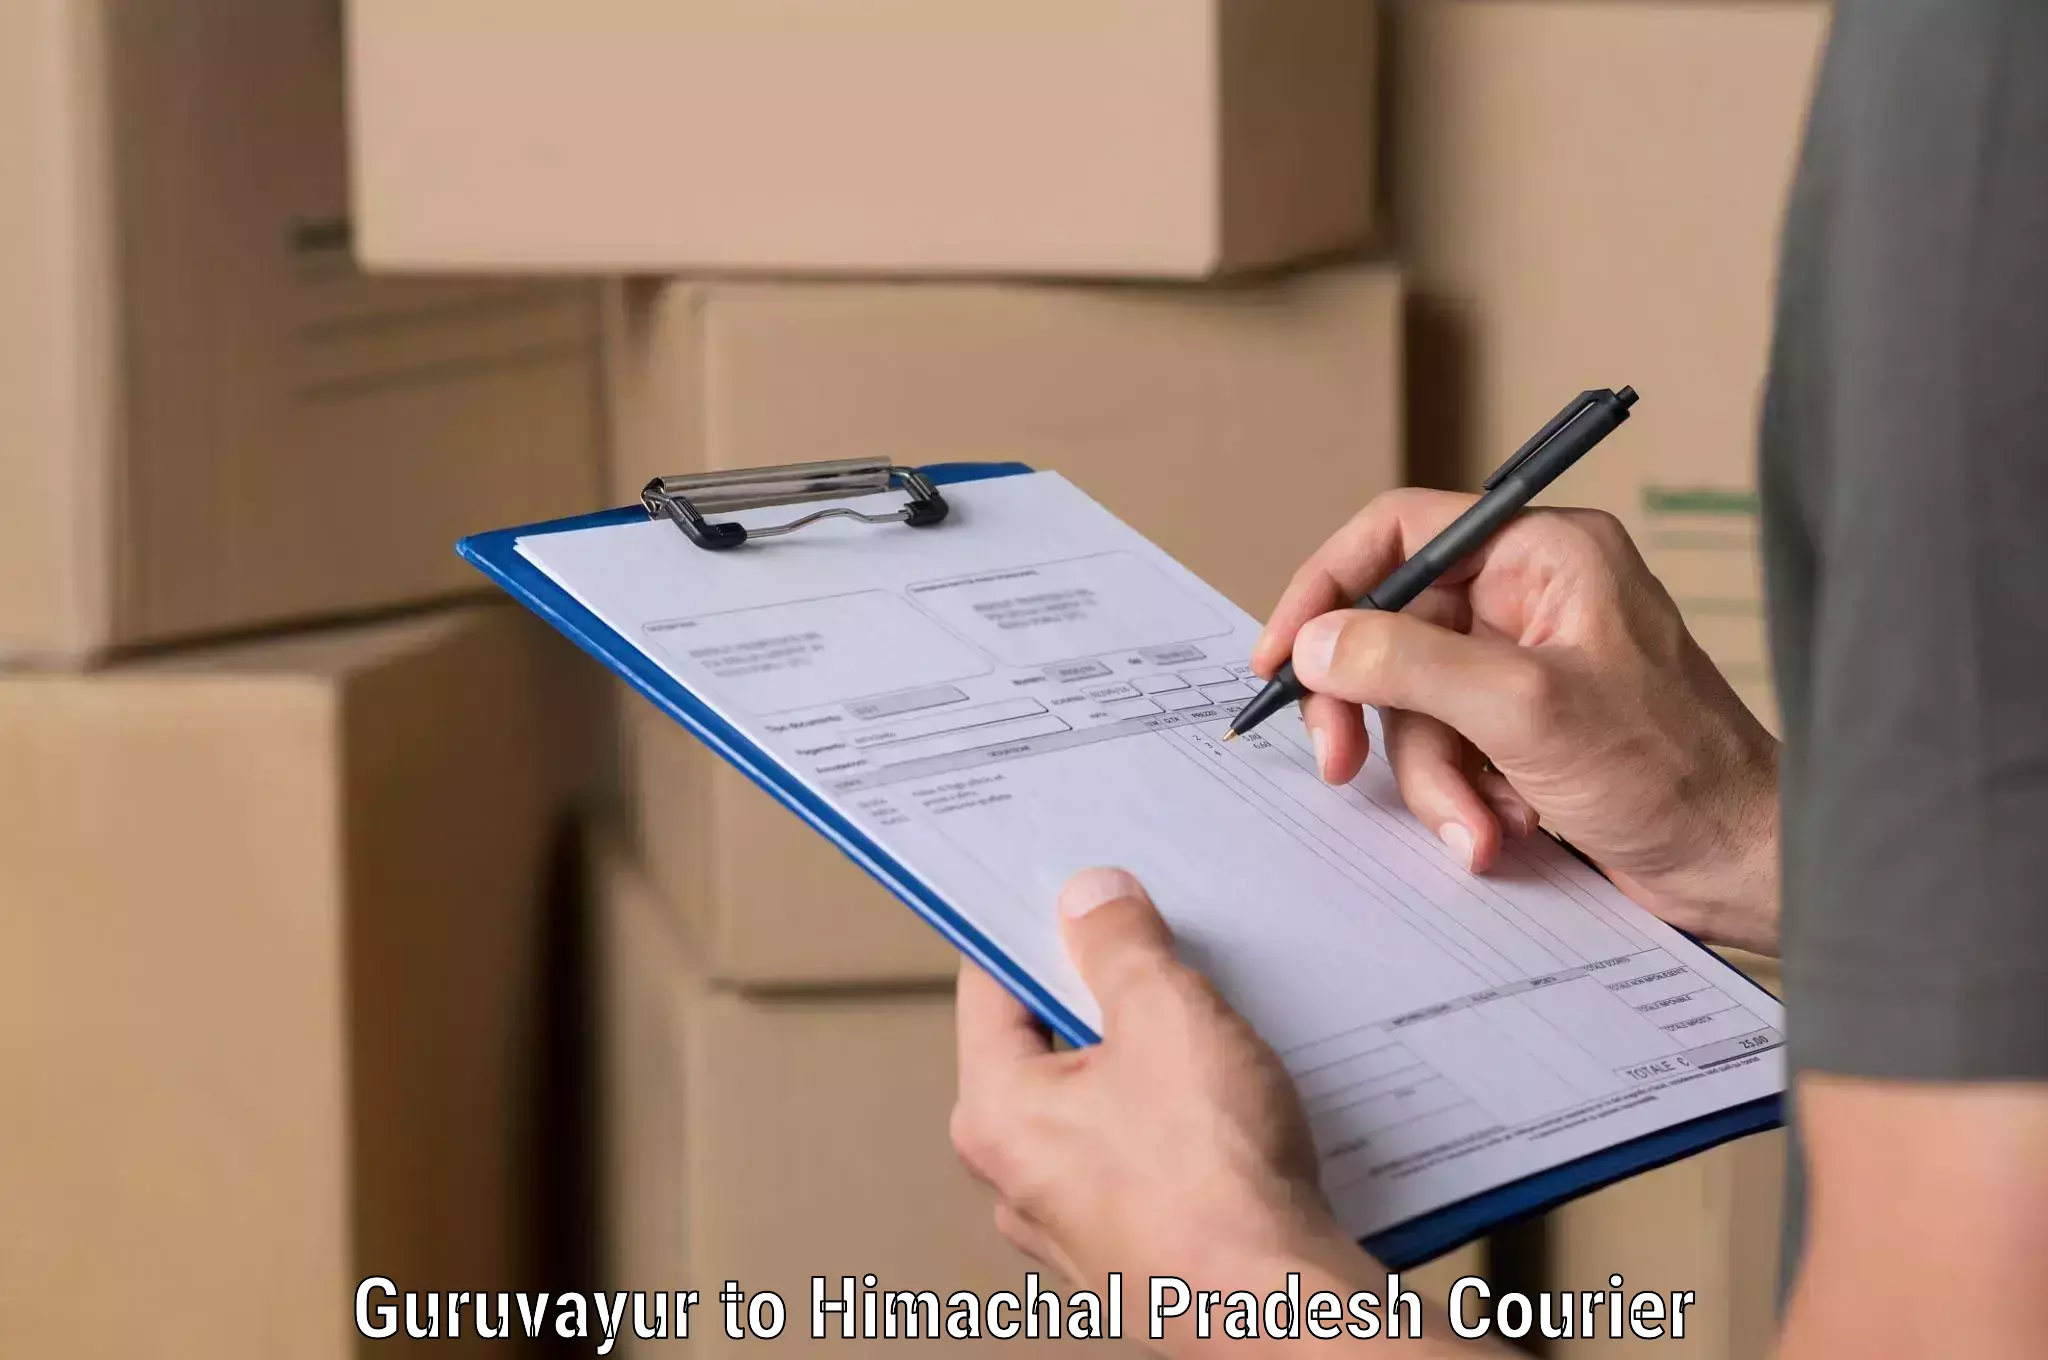 Efficient freight service Guruvayur to Himachal Pradesh